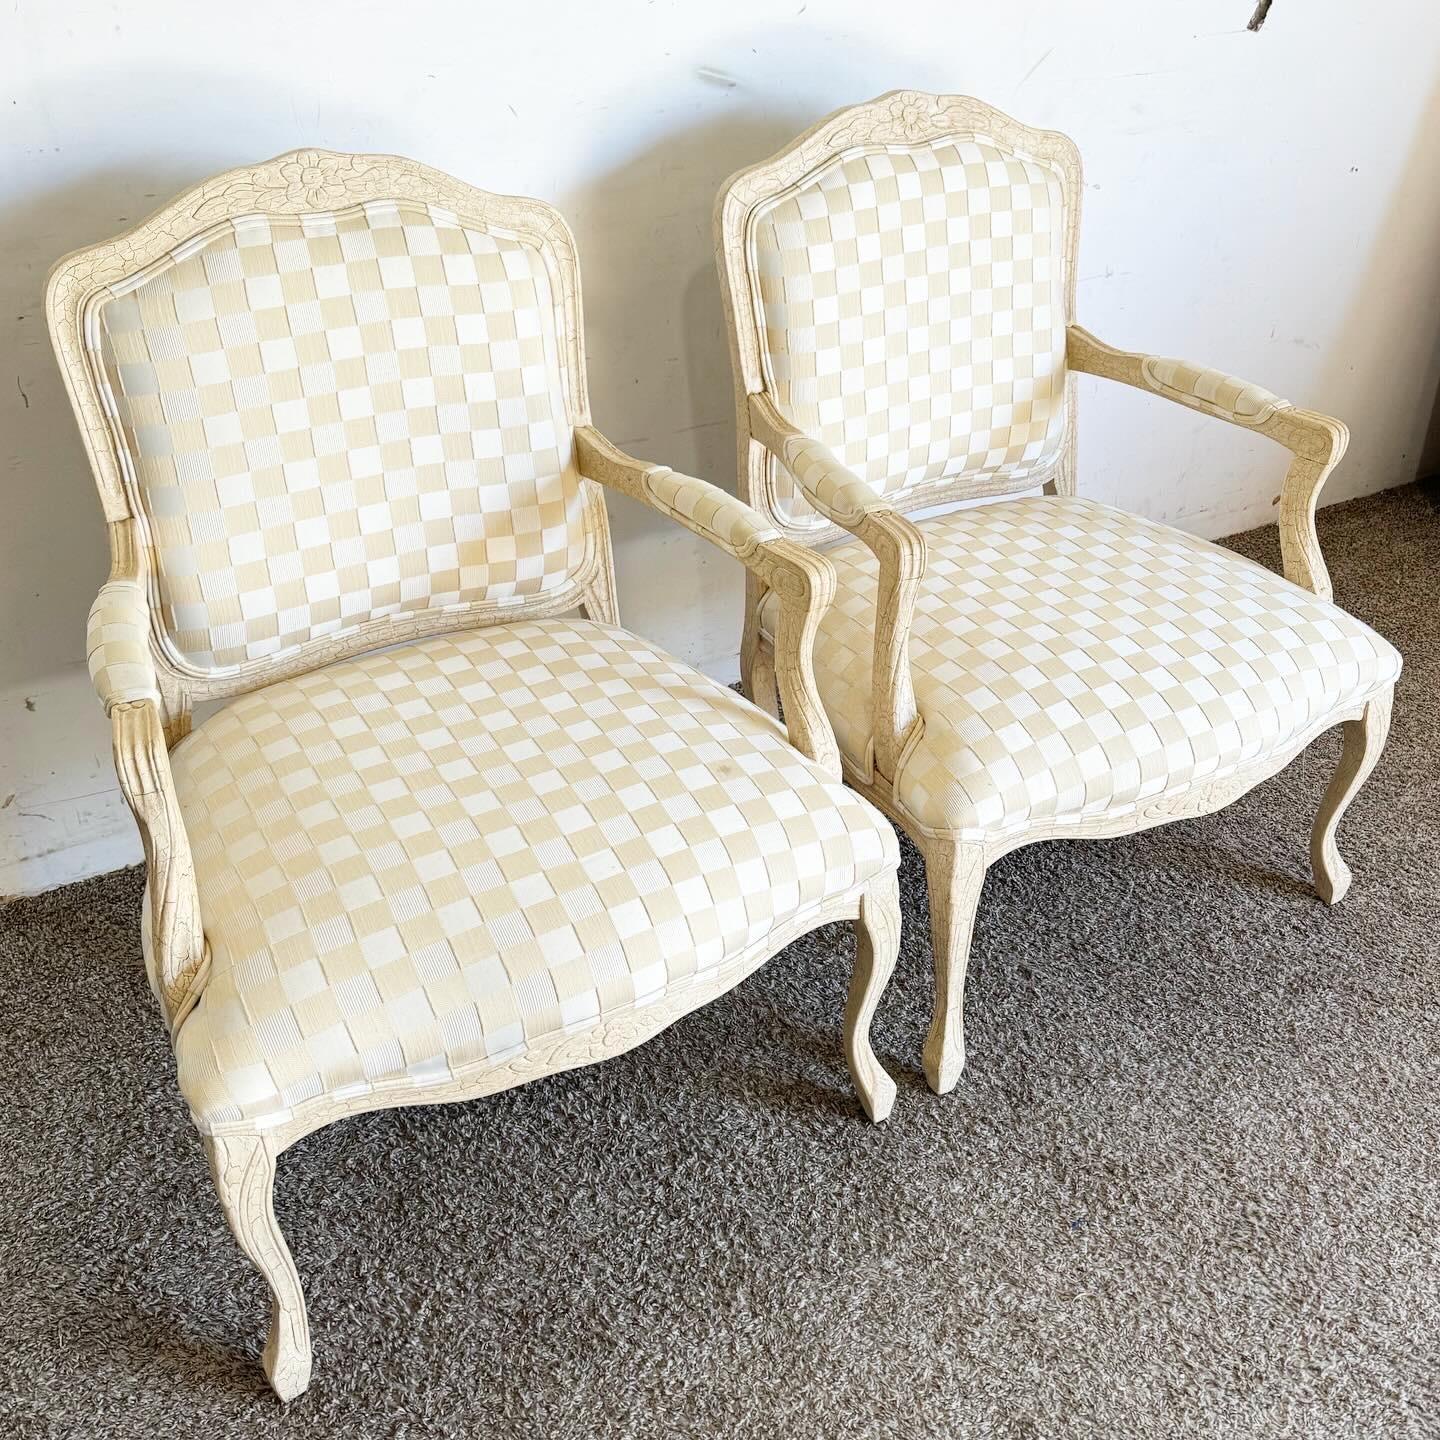 Peppen Sie Ihren Raum mit diesen Vintage Regency Cream Crackled Sesseln auf. Mit ihrer klassischen Eleganz, den detaillierten Schnitzereien und den luxuriösen Polstern sind sie perfekt geeignet, um jedem Raum Vintage-Charme und Komfort zu verleihen.